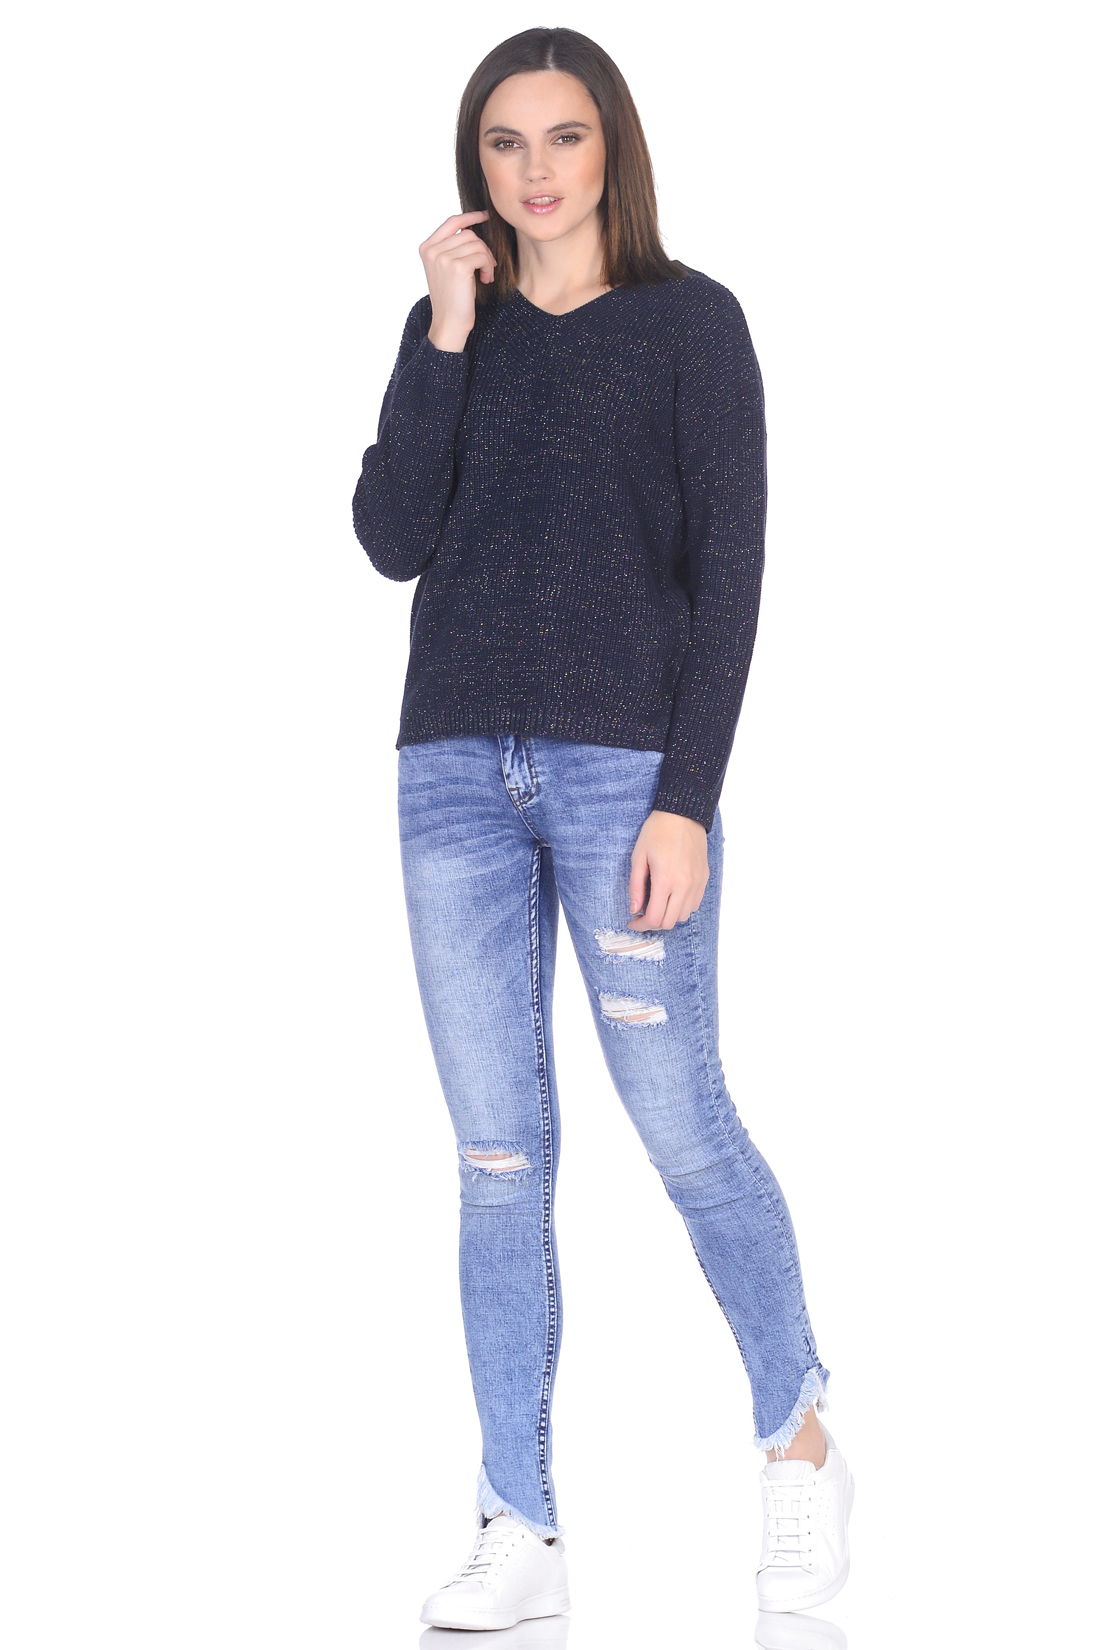 Пуловер с блестящей нитью (арт. baon B139017), размер XS, цвет синий Пуловер с блестящей нитью (арт. baon B139017) - фото 3